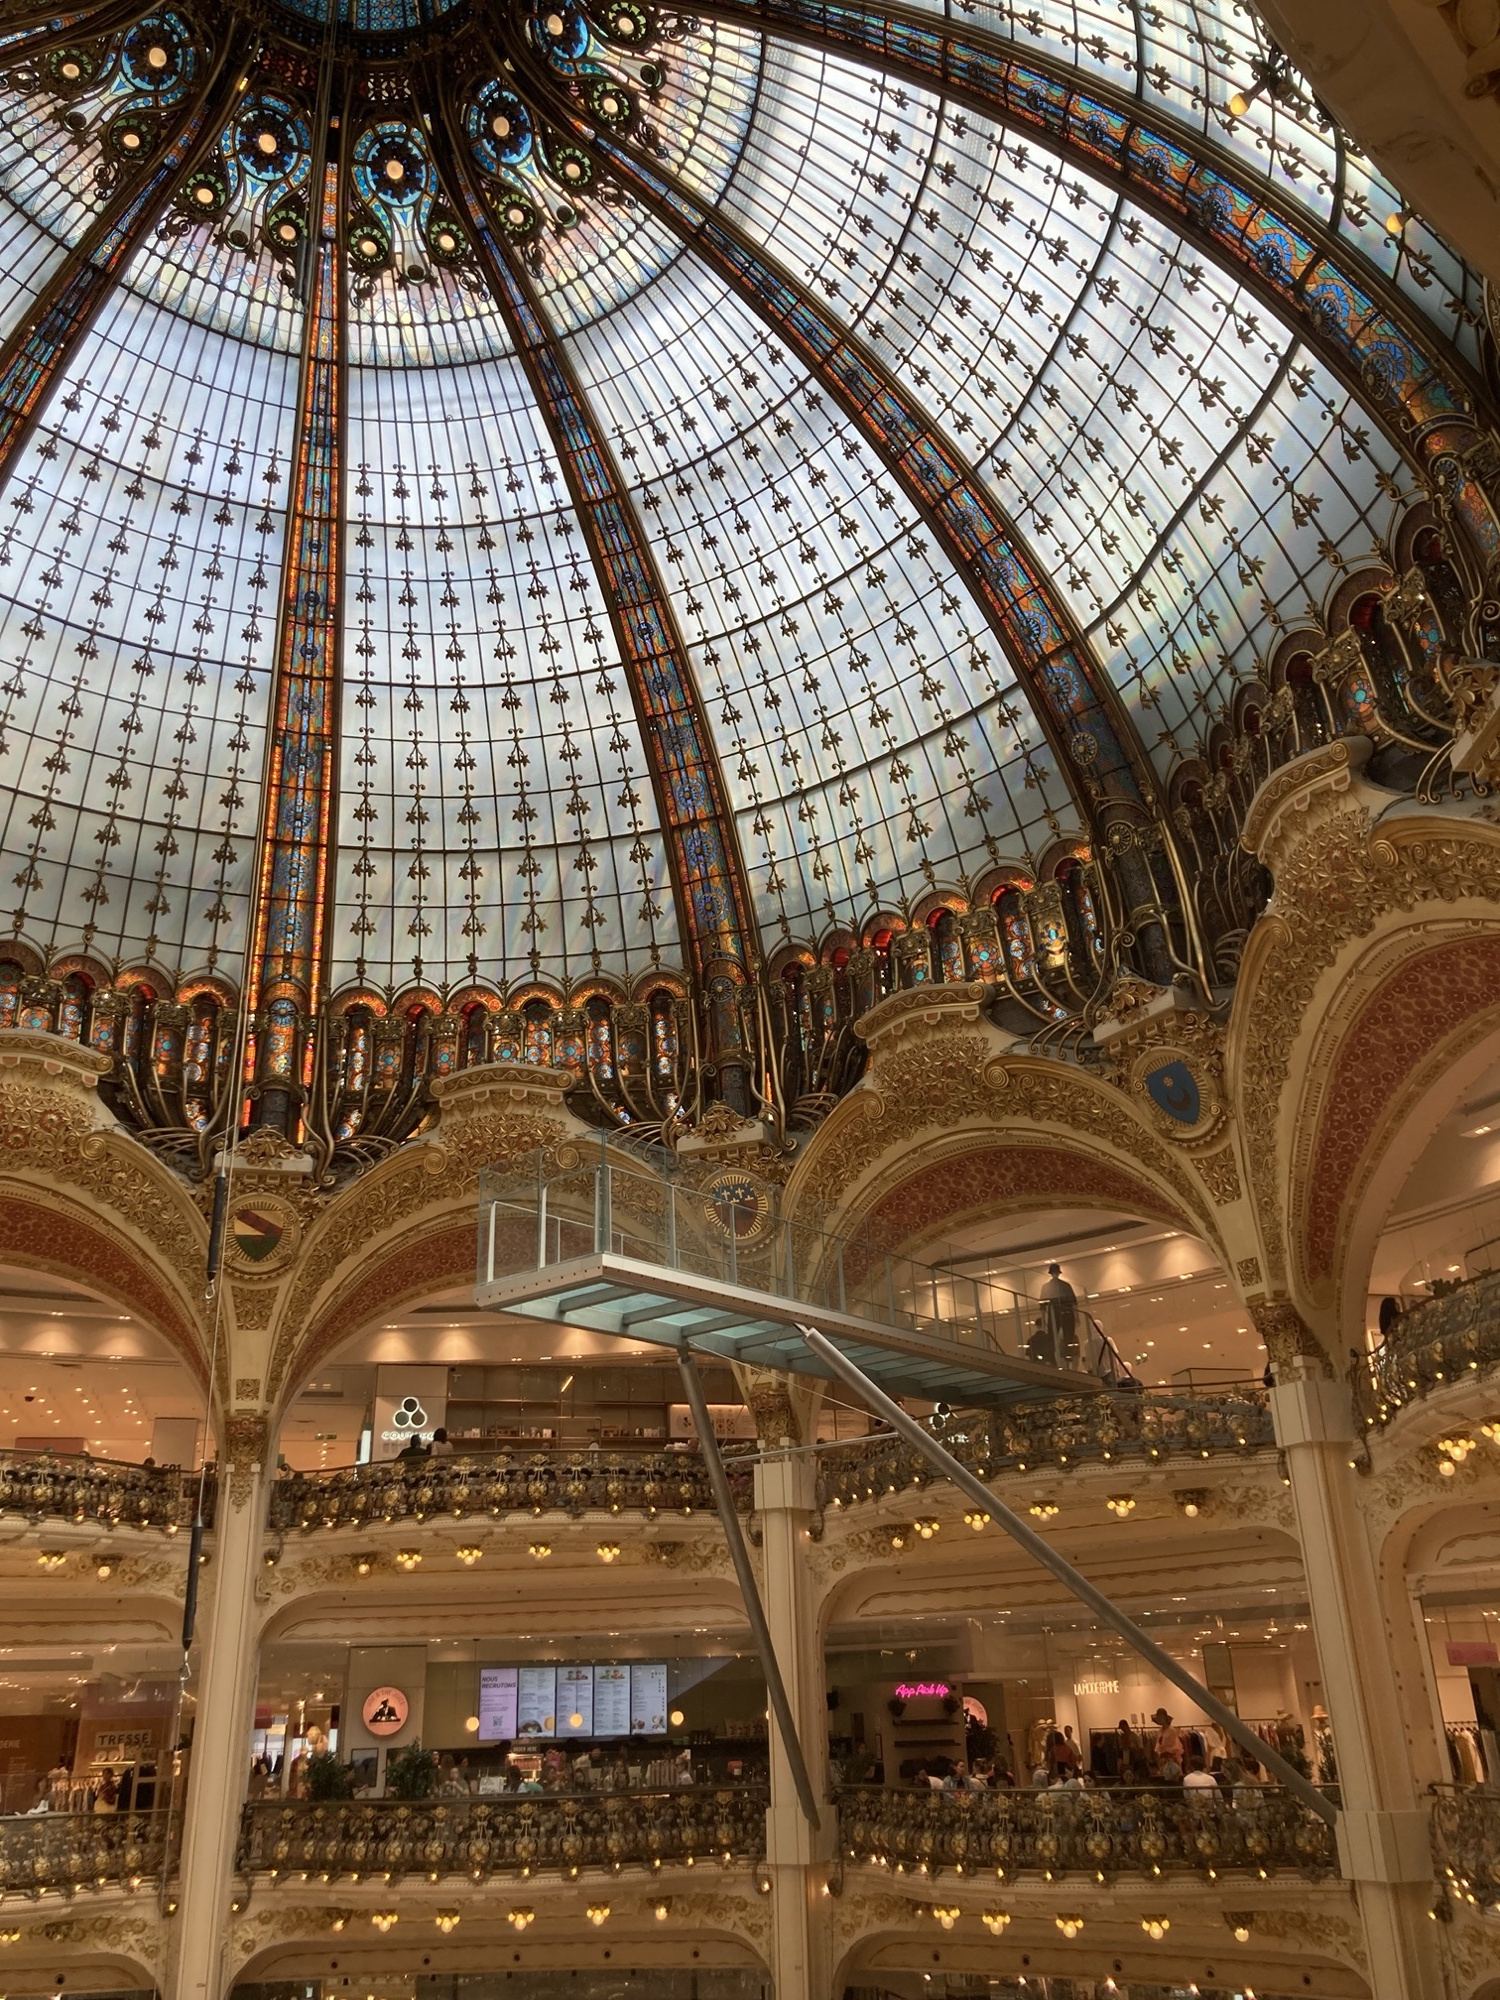 monumentales Glaskuppeldach im Inneren der Galeries Lafayette, zu sehen ist die opulente Glaskuppel und zwei Stockwerke darunter, vom obersten Stockwerk ragt ein Glasgang in den Kuppelbereich hinein